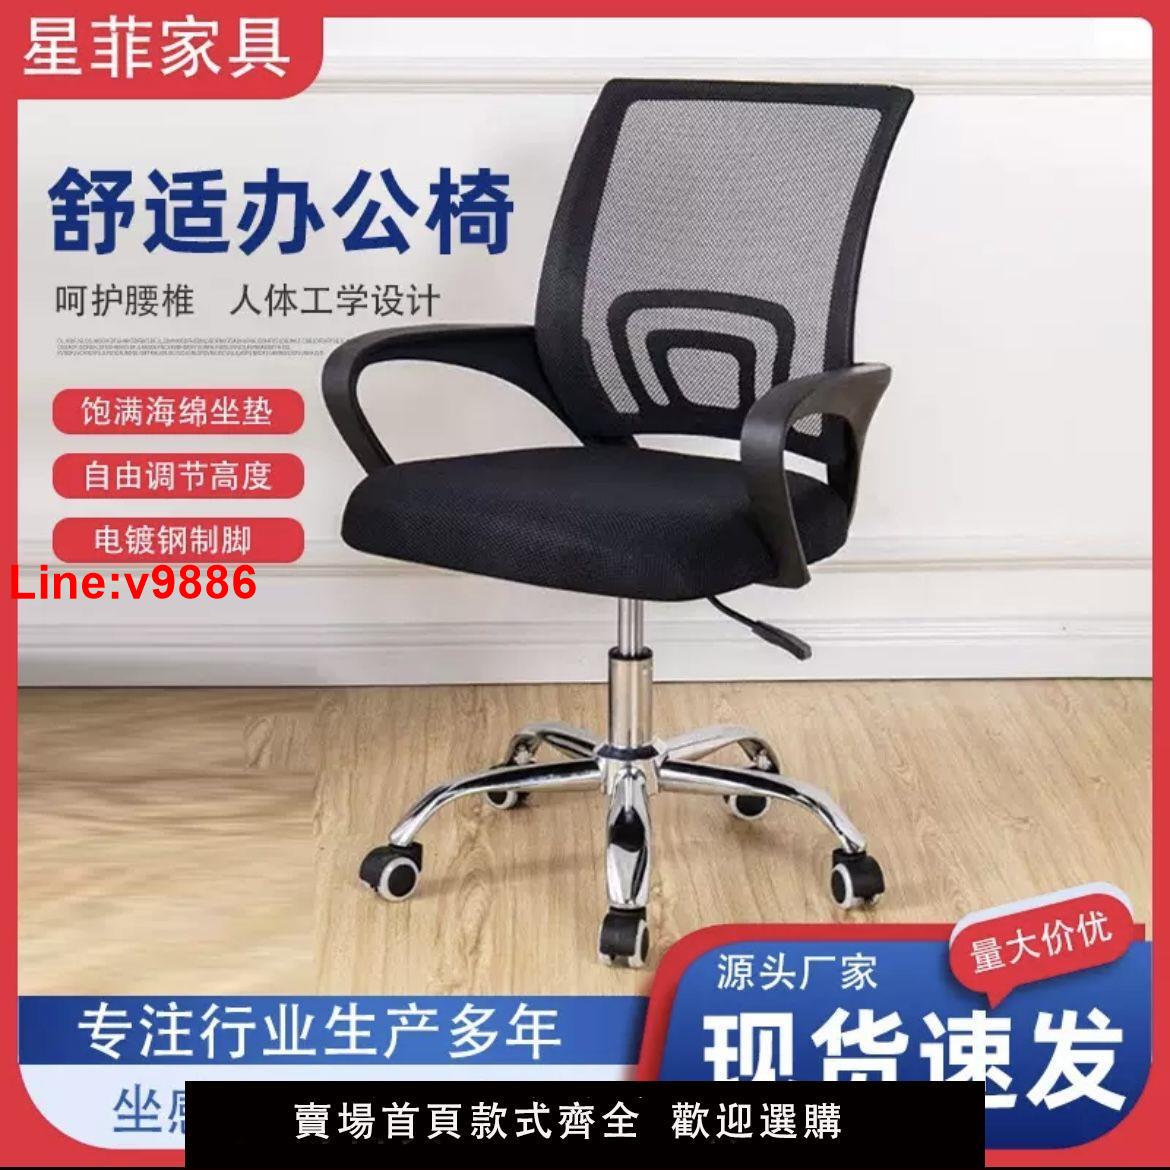 【台灣公司 超低價】辦公椅子家用網布電腦椅會議椅員工辦公桌椅子學生宿舍升降學習椅